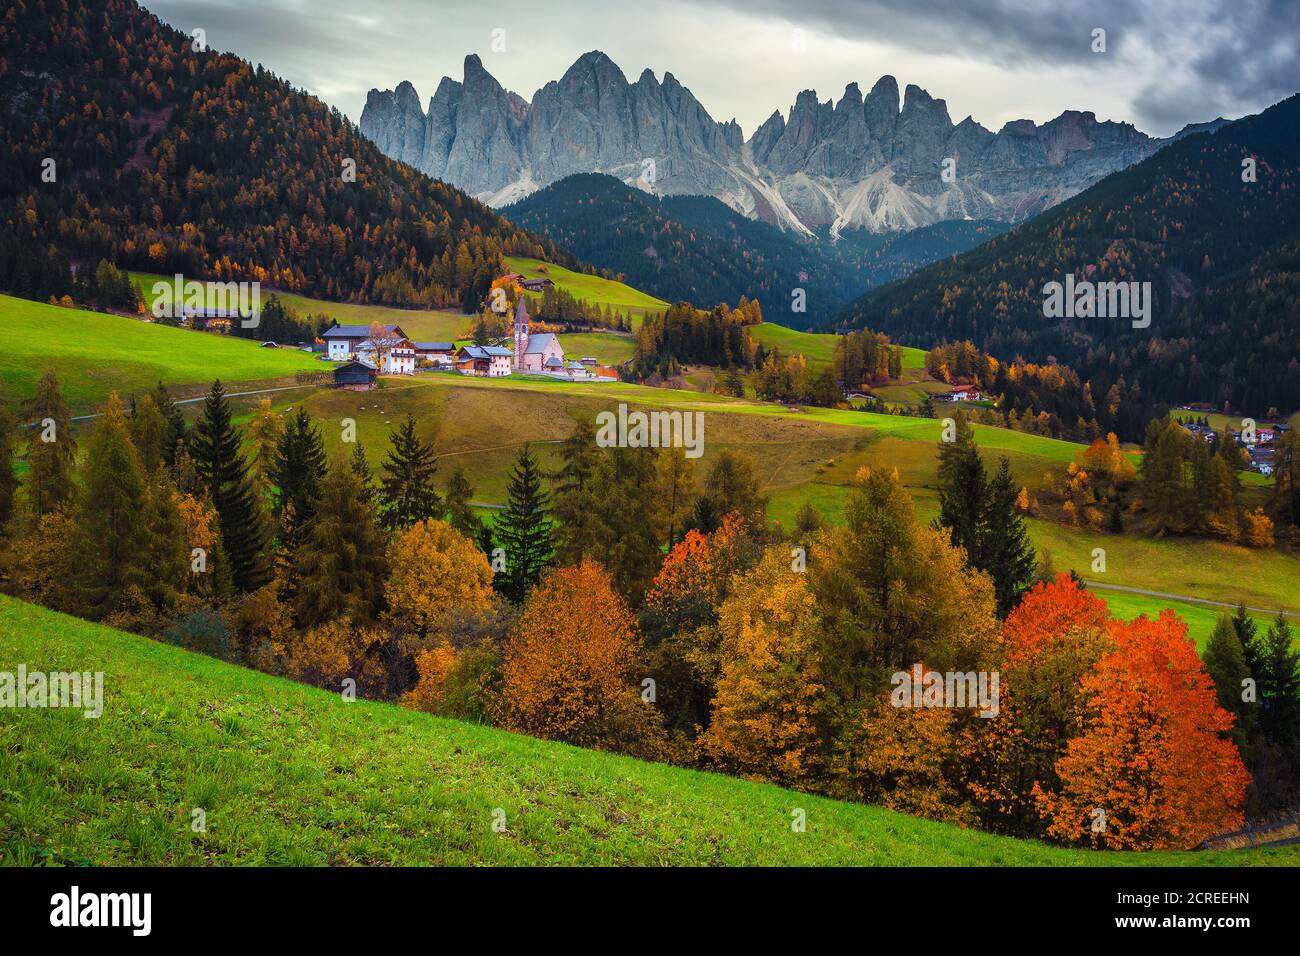 Bekannter touristischer und fotografischer Ort der Welt, Santa Maddalena Dorf mit magischen Dolomiten Berge, Val di Funes Tal, Trentino Alto Stockfoto